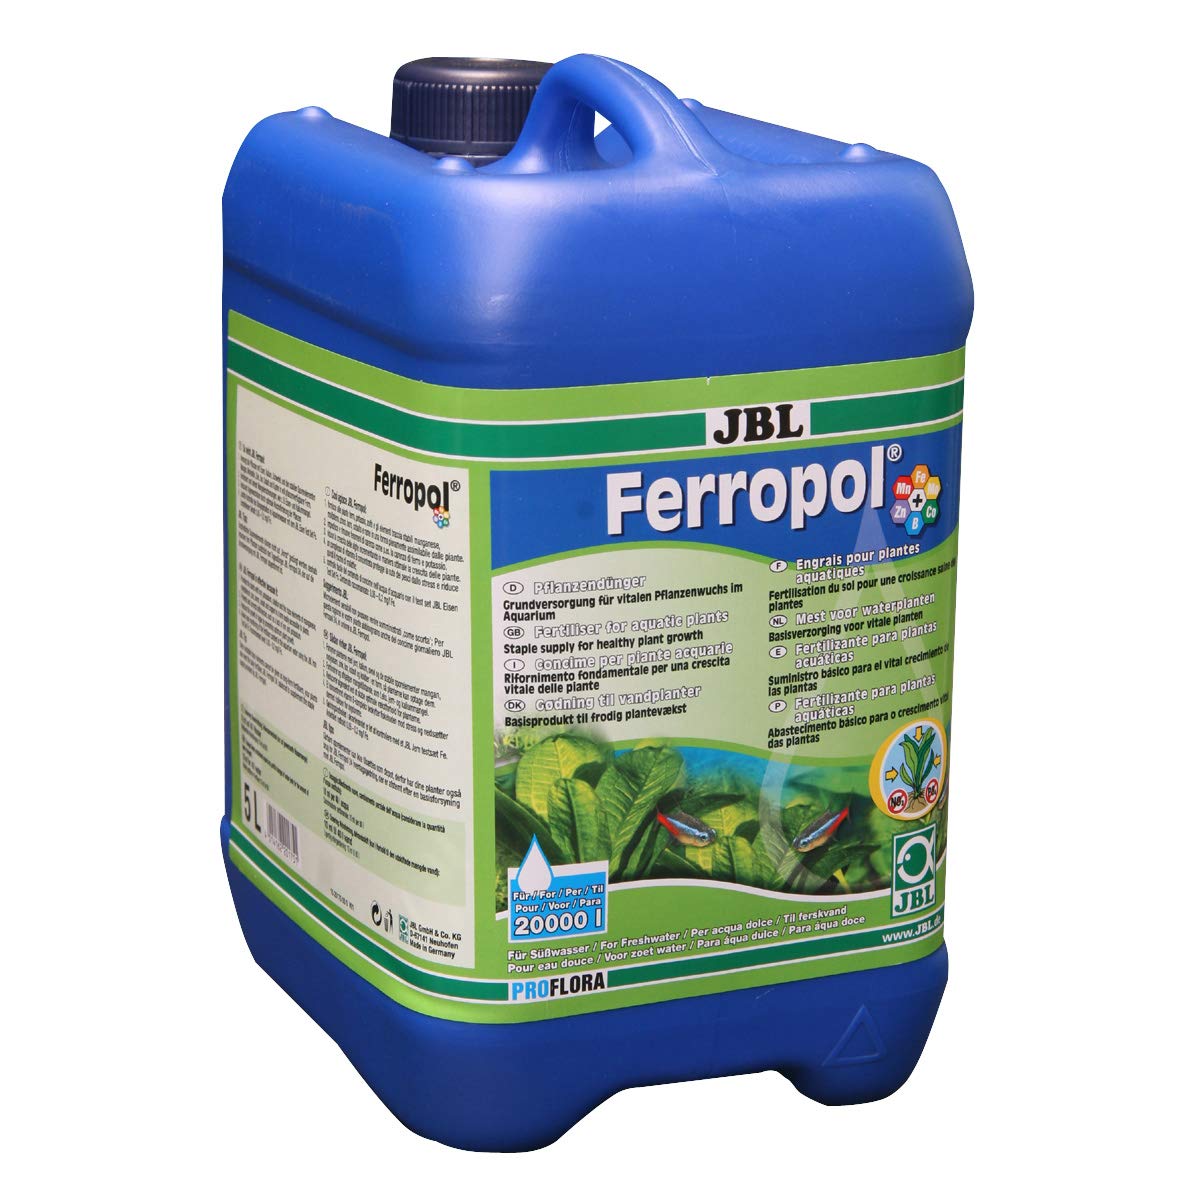 JBL Ferropol 20175, Pflanzendünger für Süßwasser-Aquarien, 5 l